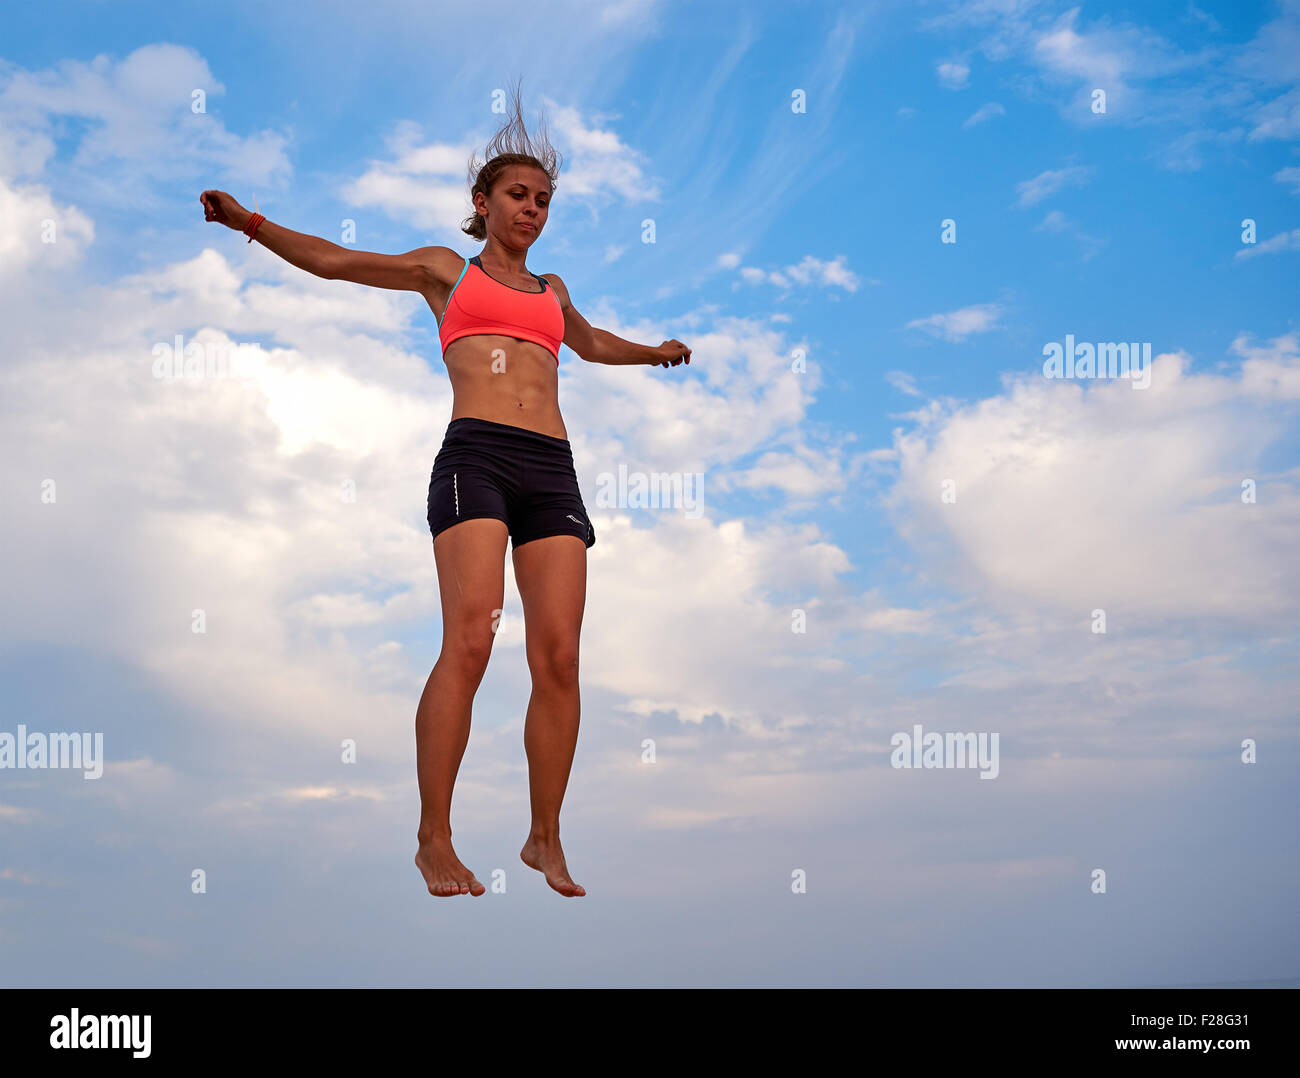 Flying girl over beautiful sky Stock Photo